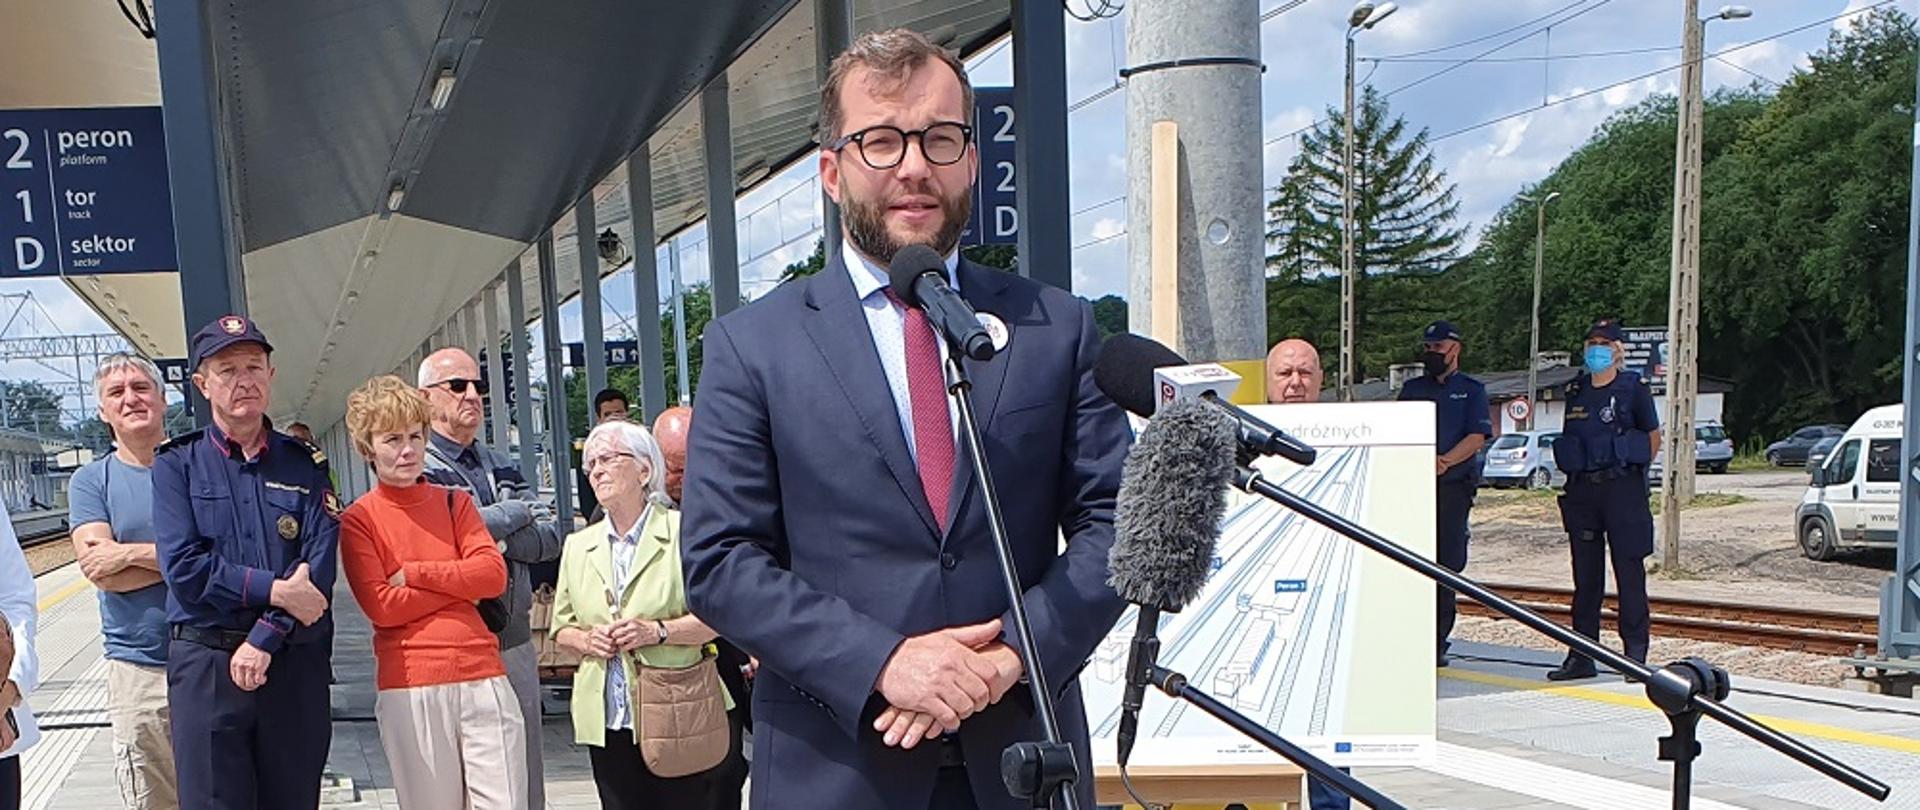 Minister Grzegorz Puda stoi przed mikrofonem podczas konferencji prasowej, w tle peron i grupa ludzie stojących